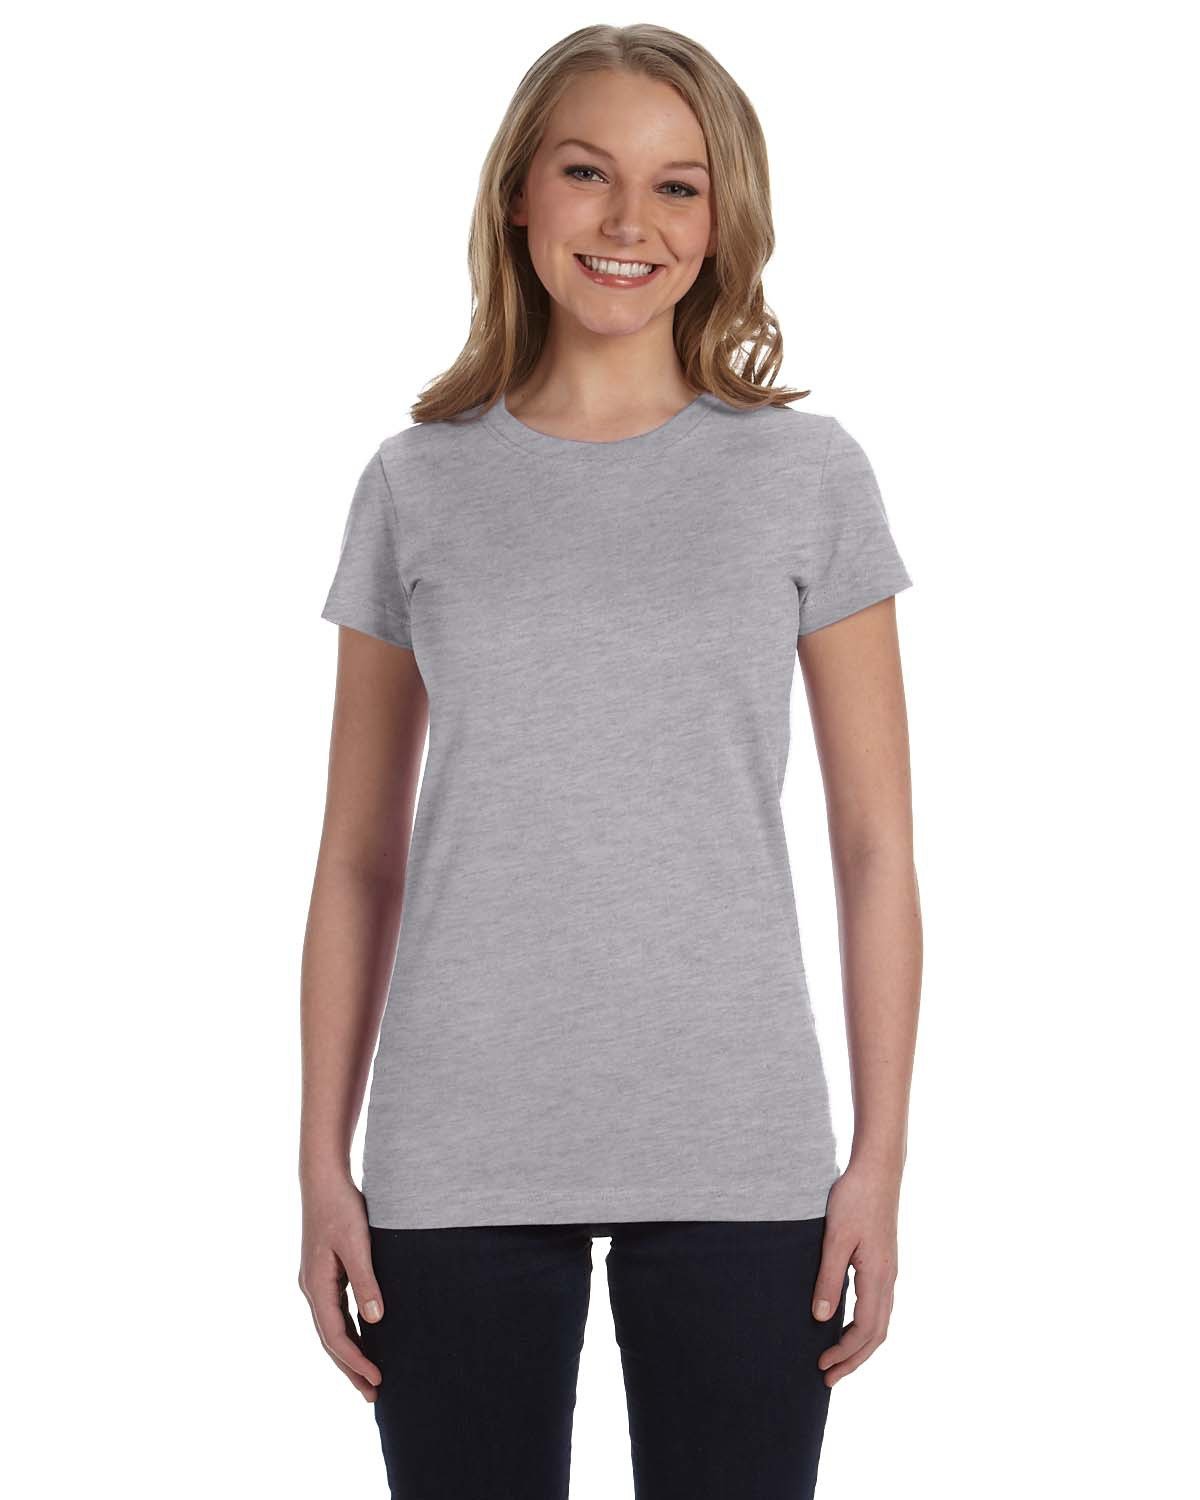 LAT Ladies' Junior Fit T-Shirt heather 